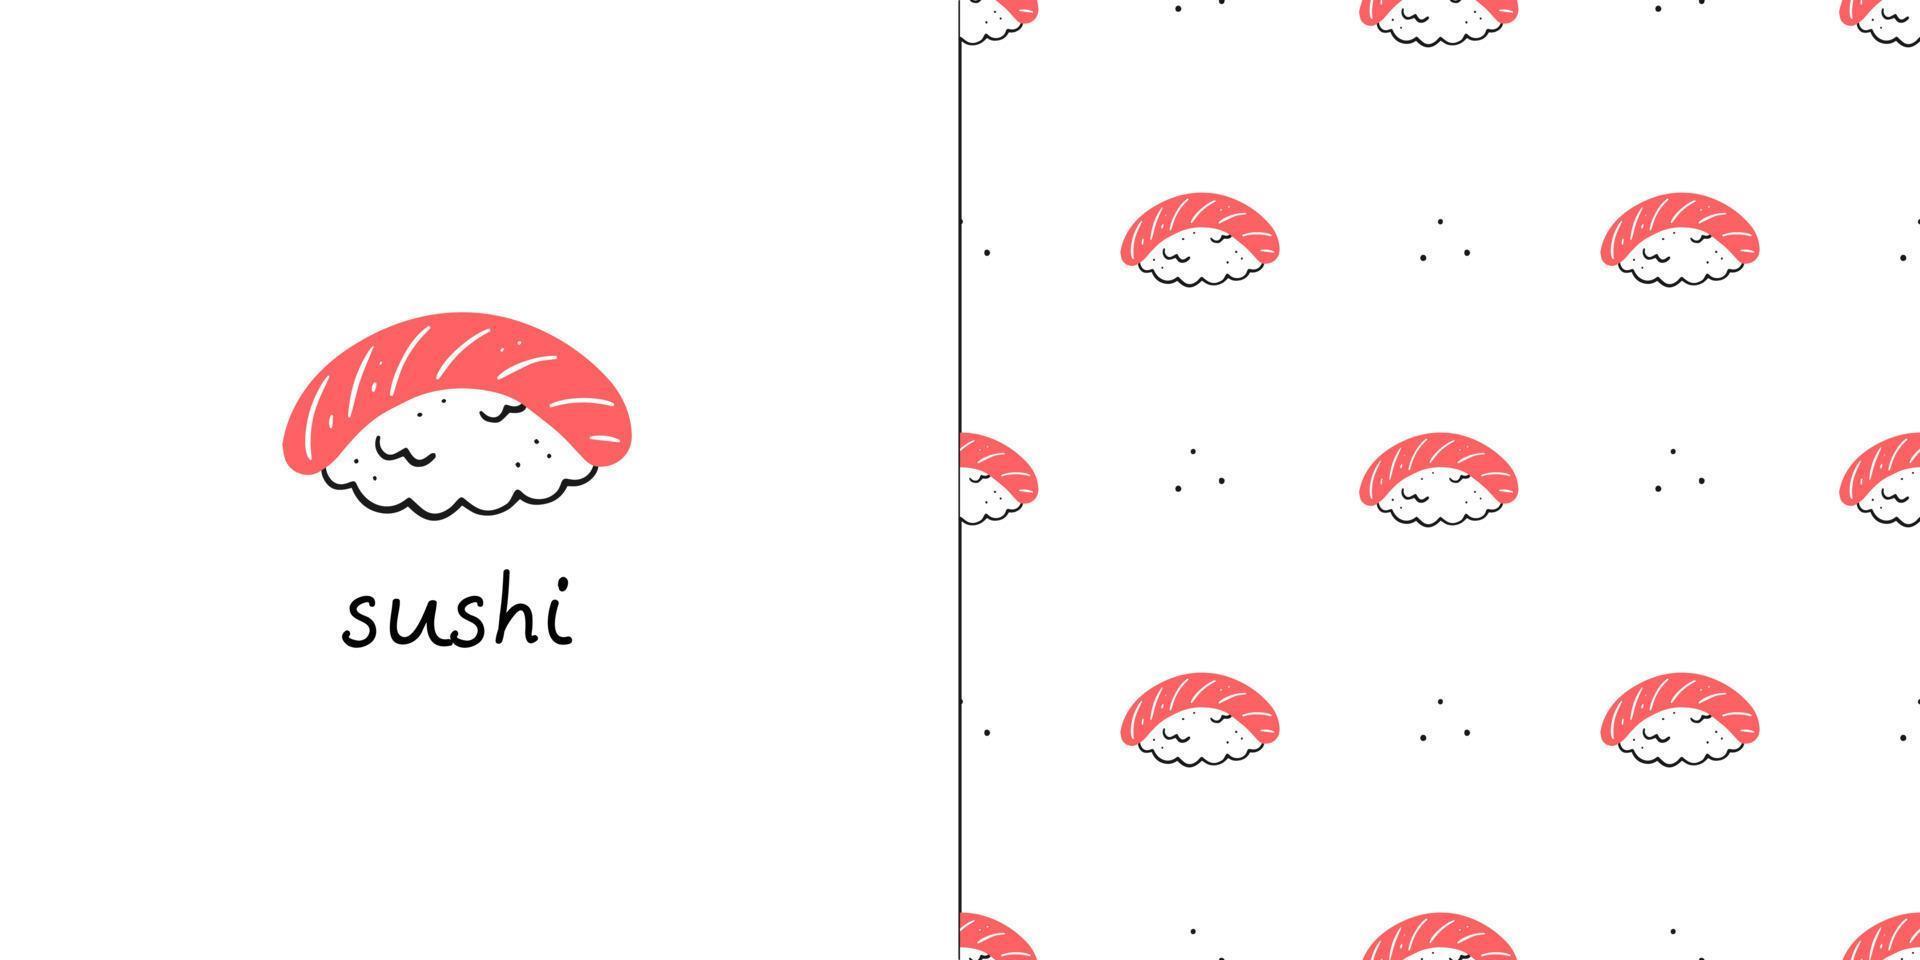 padrão perfeito com rolos de sushi de salmão e um cartão postal com texto de sushi. ilustração em vetor de cozinha asiática.